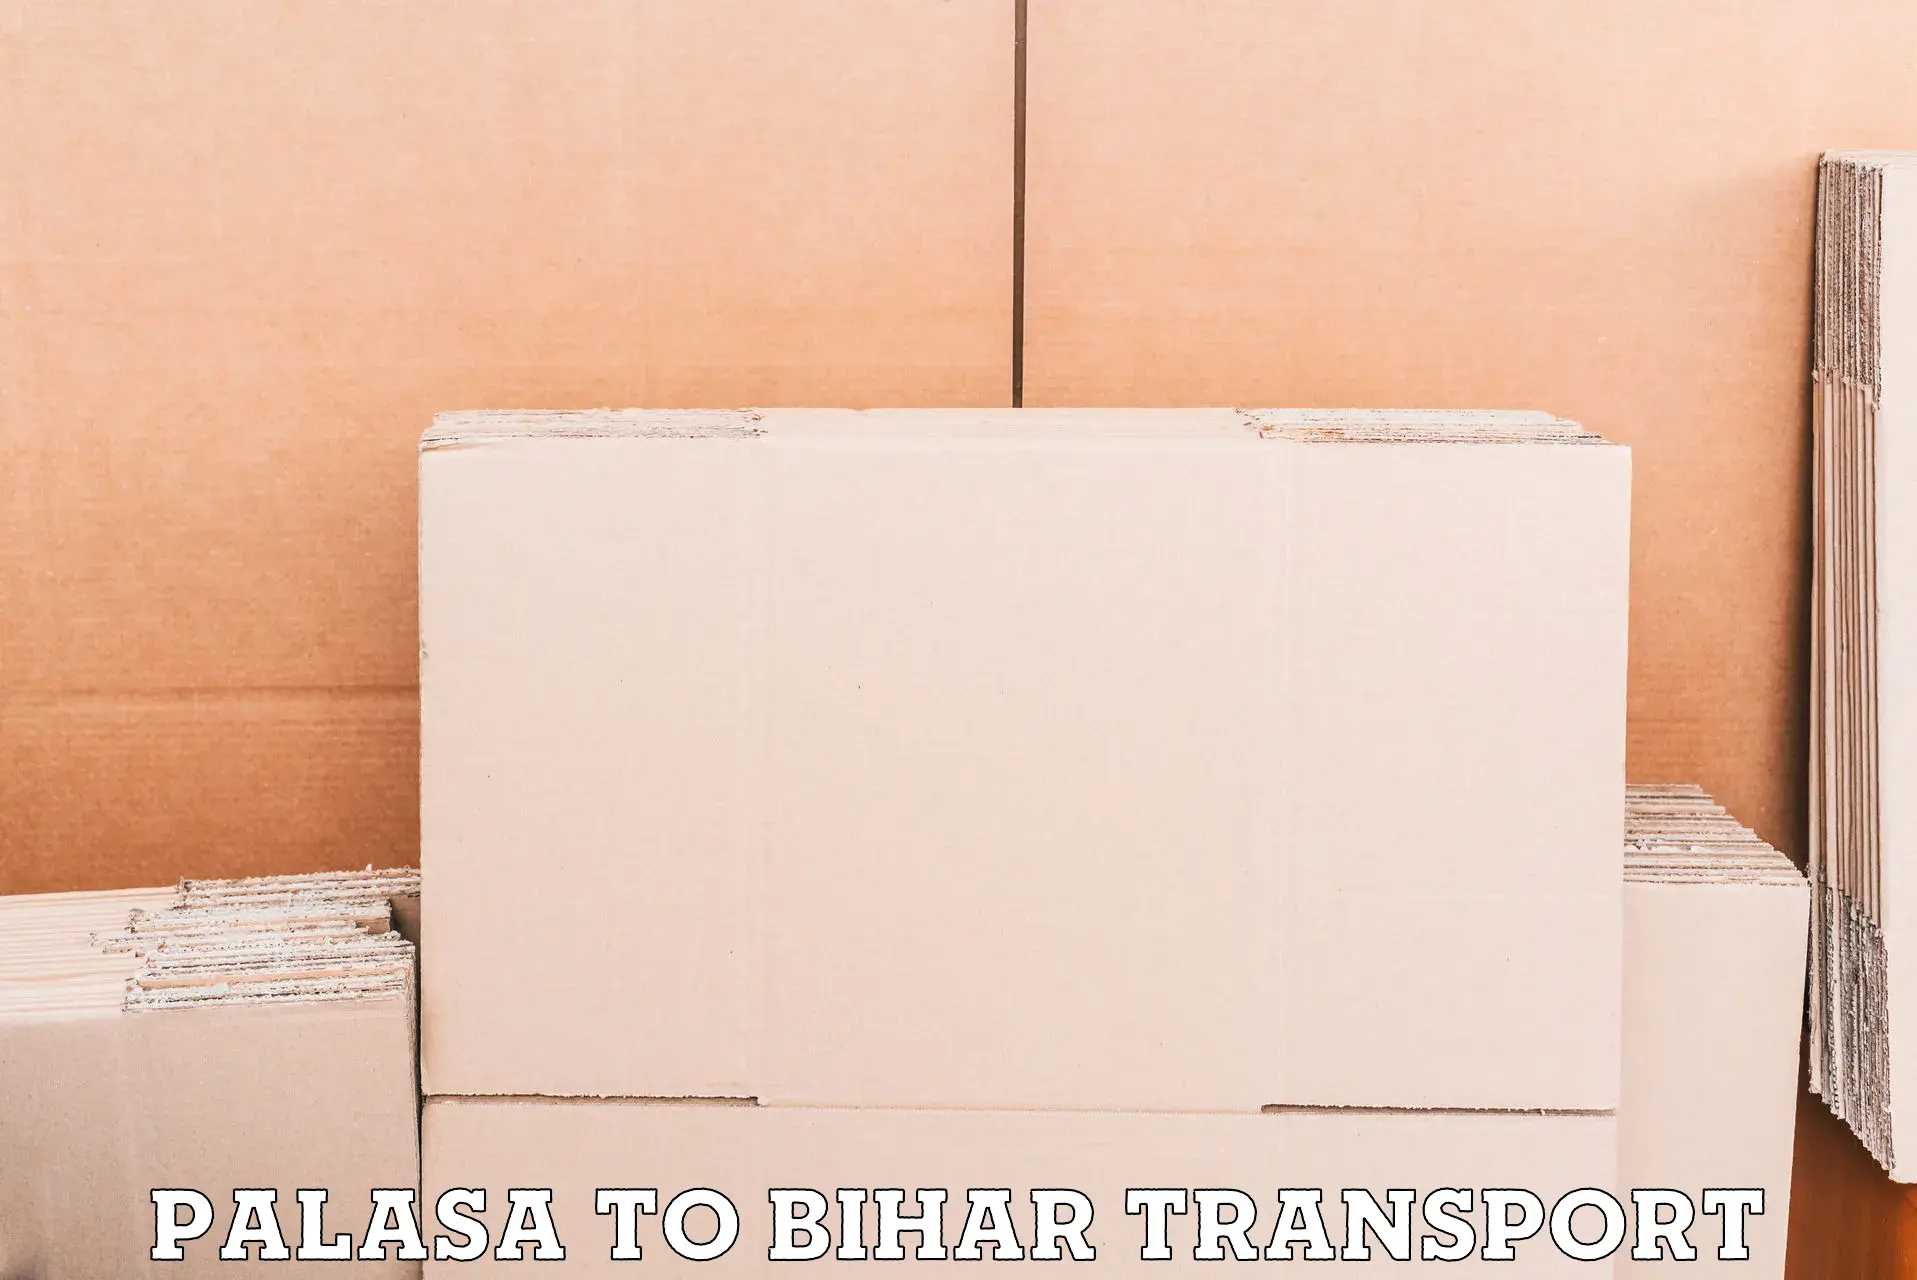 Daily transport service Palasa to Dinara